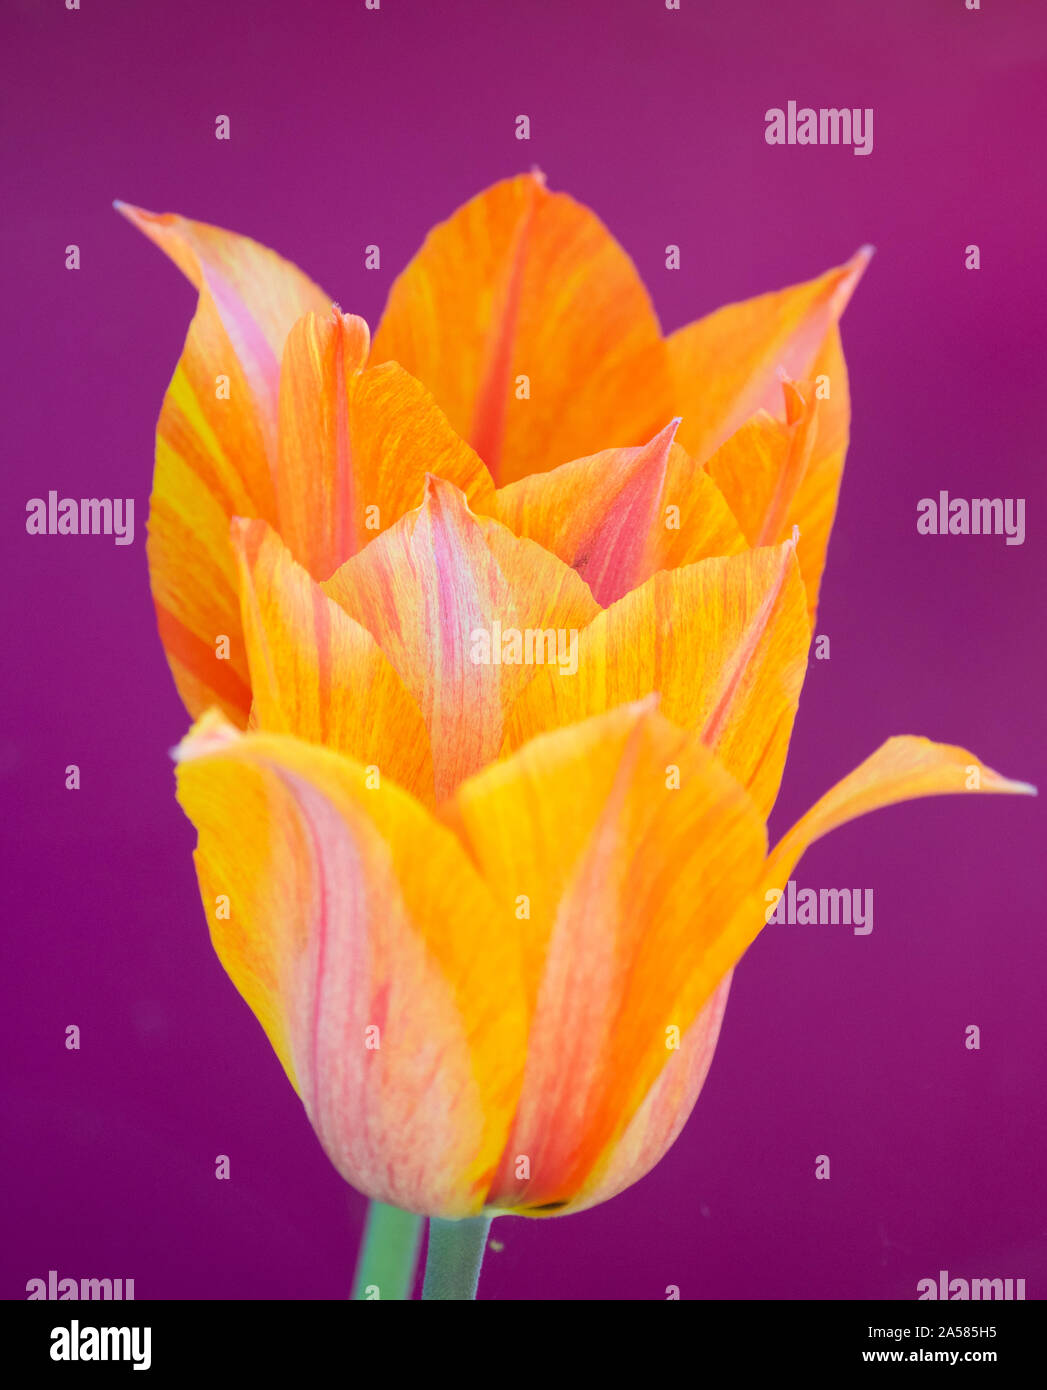 Close-up of orange tulip flower, Keukenhof Gardens, Lisse, South Holland, Netherlands Stock Photo